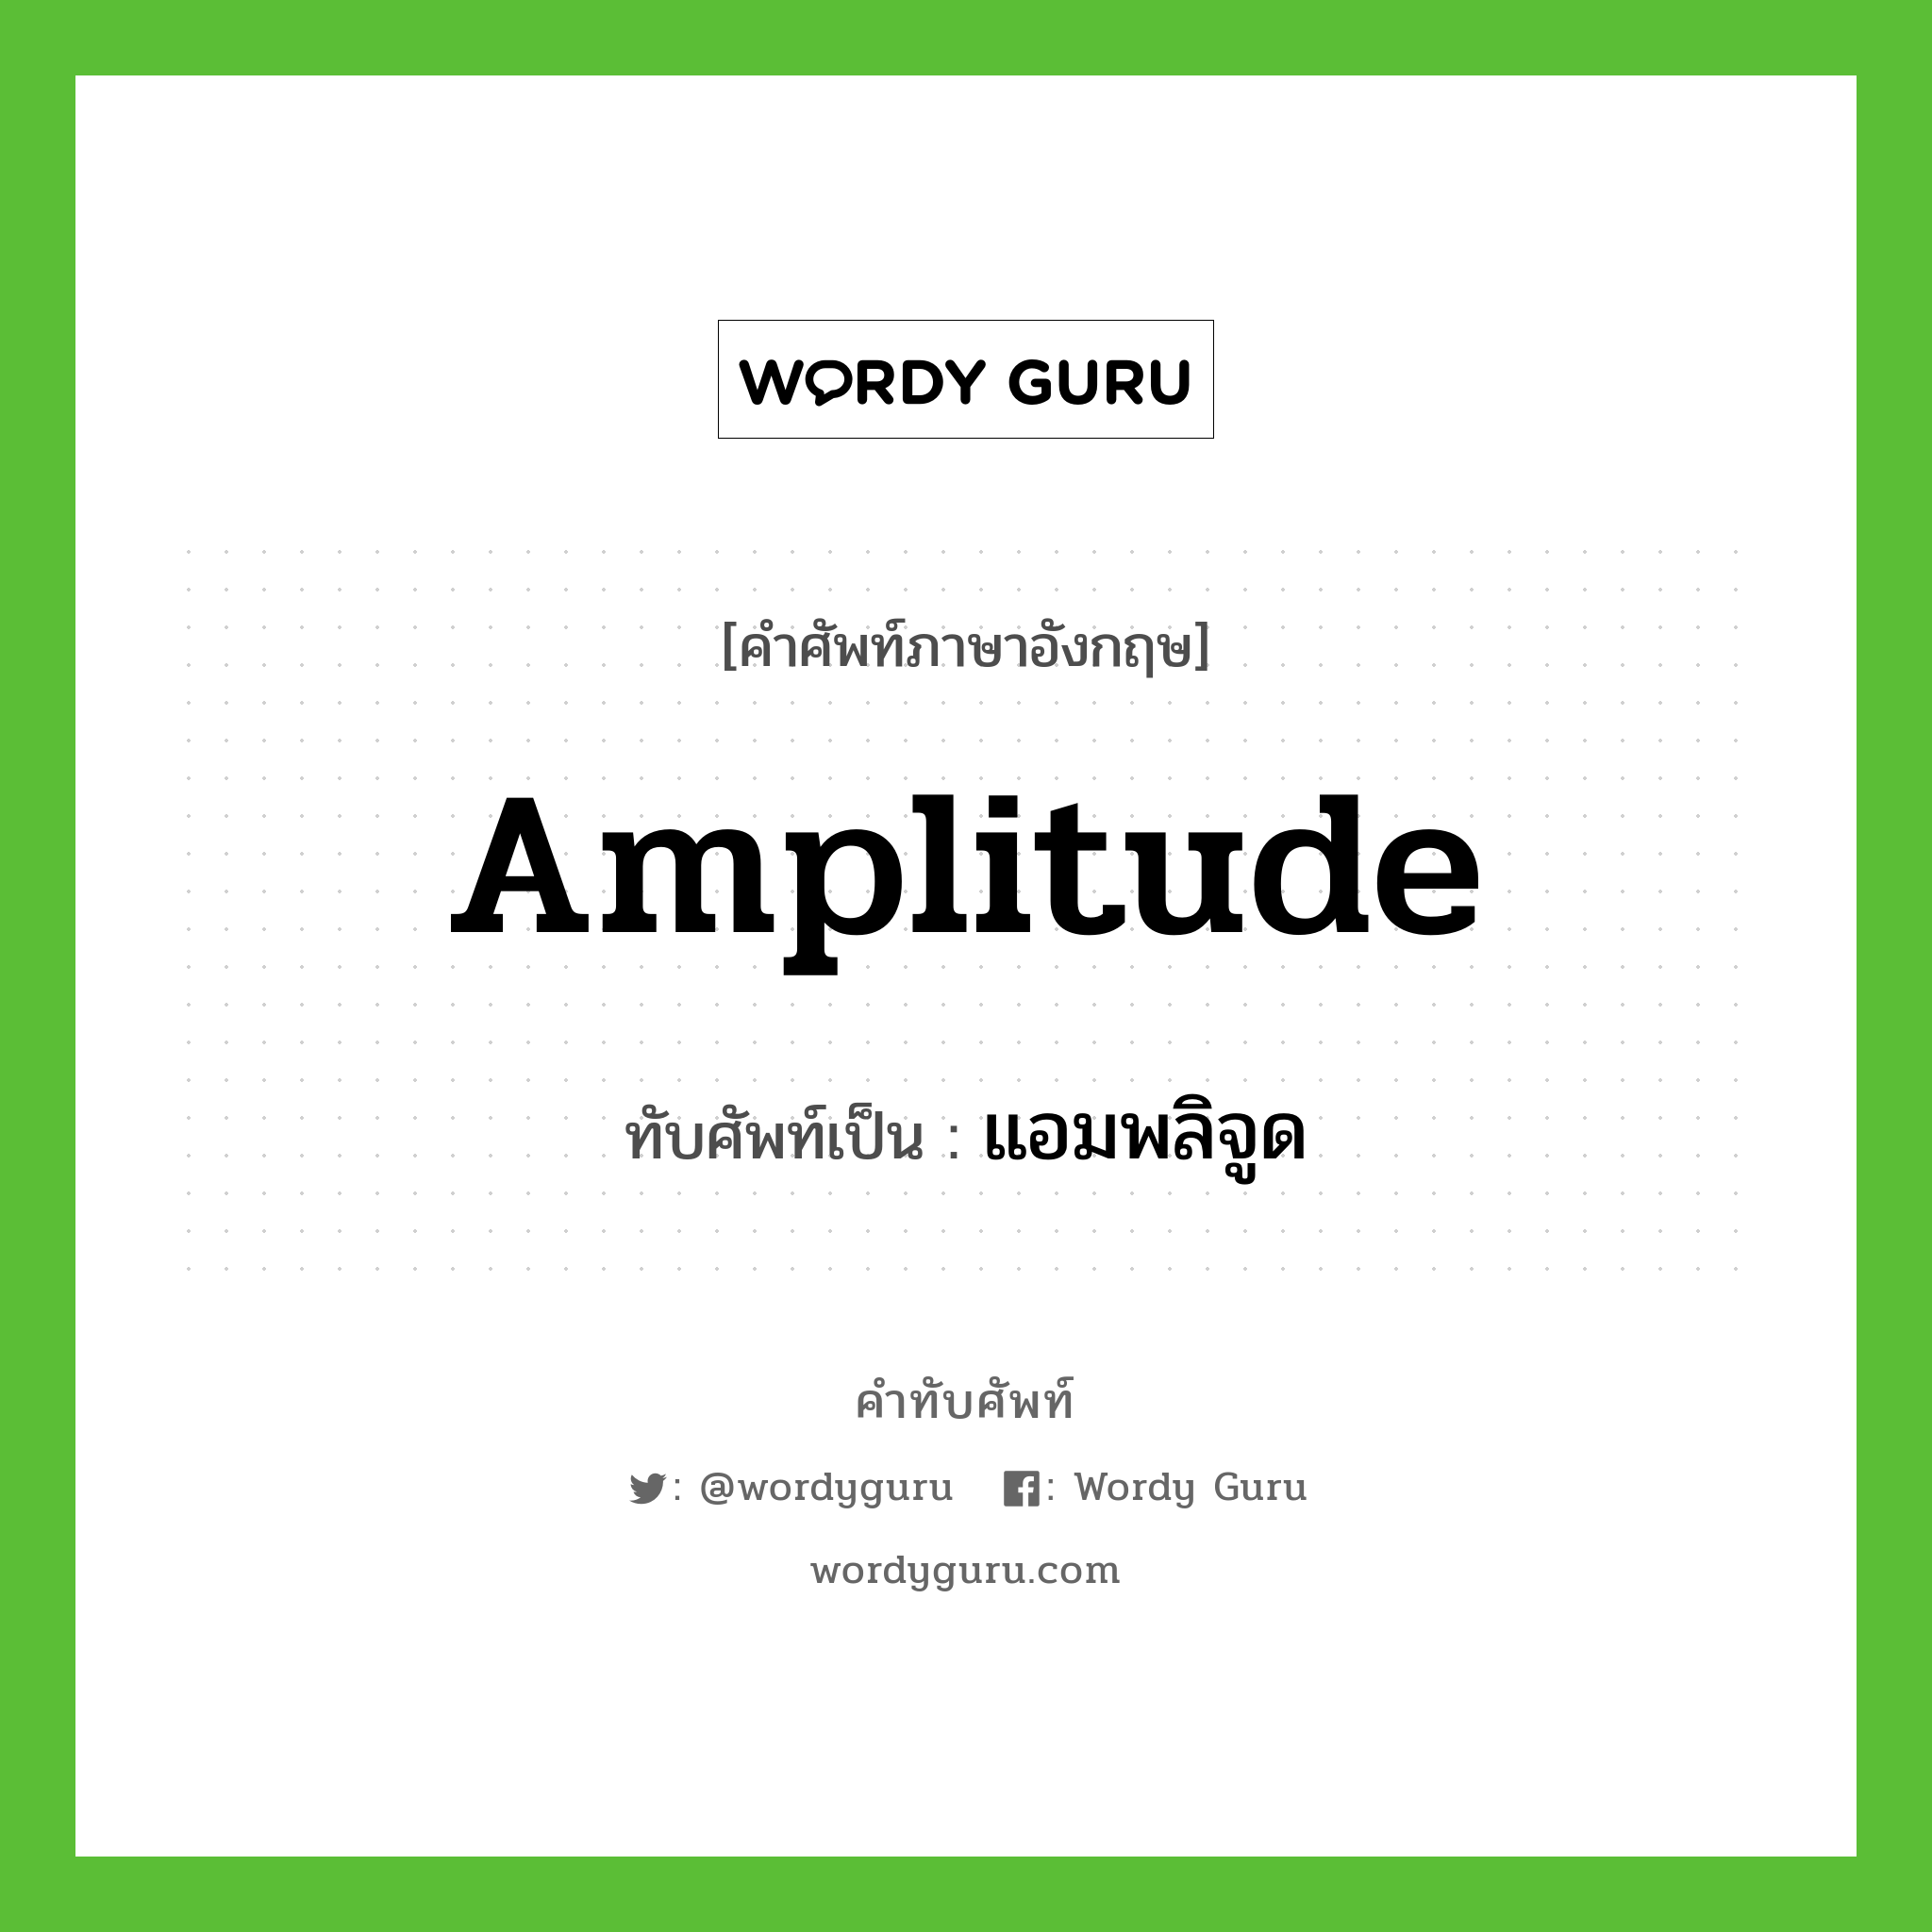 amplitude เขียนเป็นคำไทยว่าอะไร?, คำศัพท์ภาษาอังกฤษ amplitude ทับศัพท์เป็น แอมพลิจูด